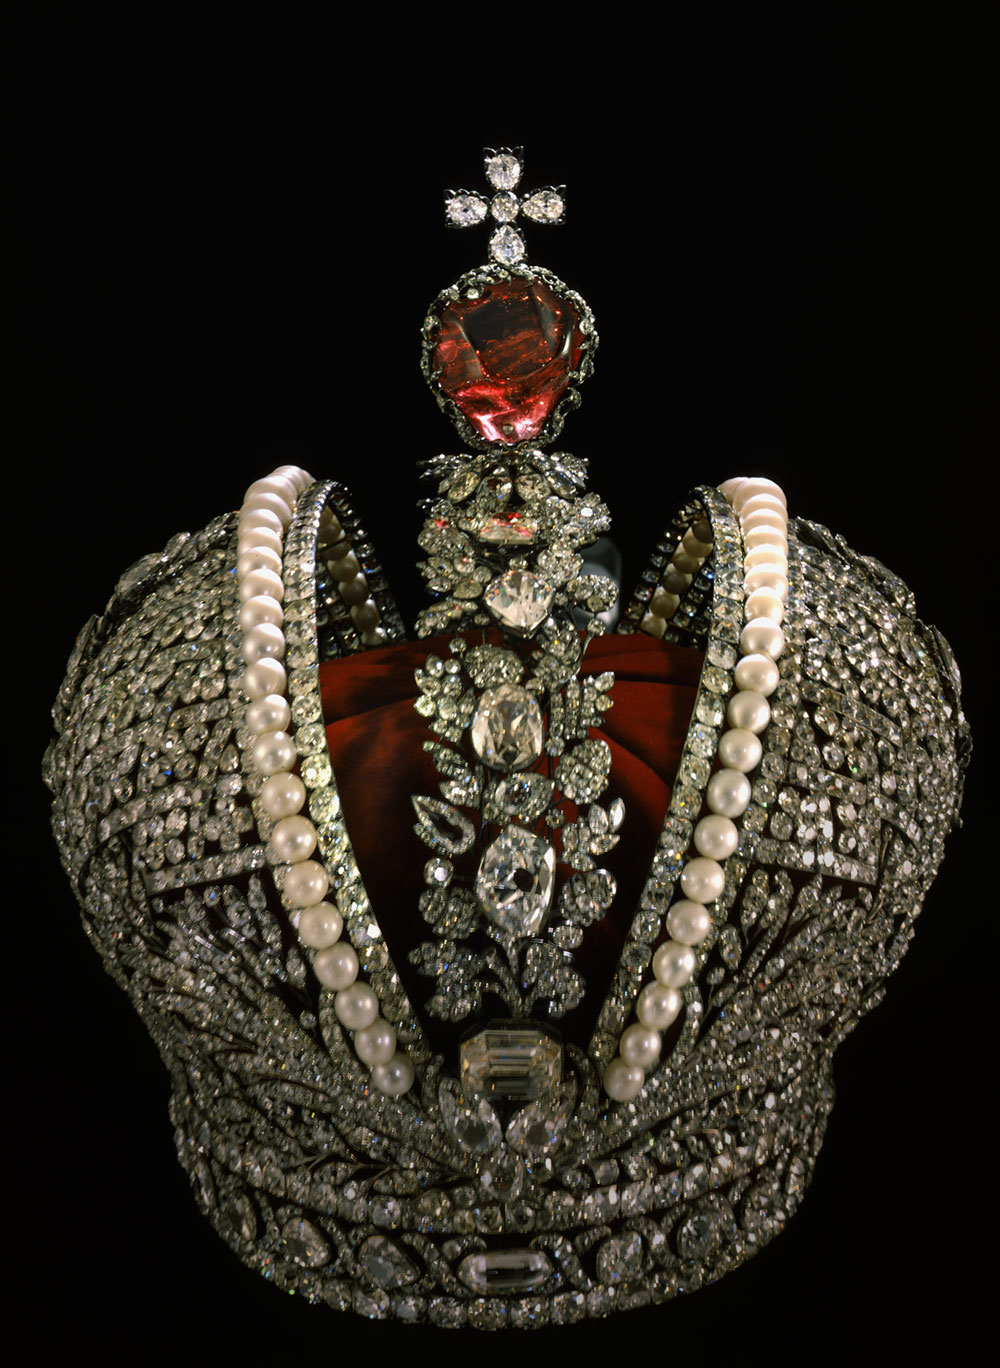 凯瑟琳二世或凯瑟琳大帝是俄罗斯历史上唯一一位被称为大帝的女沙皇